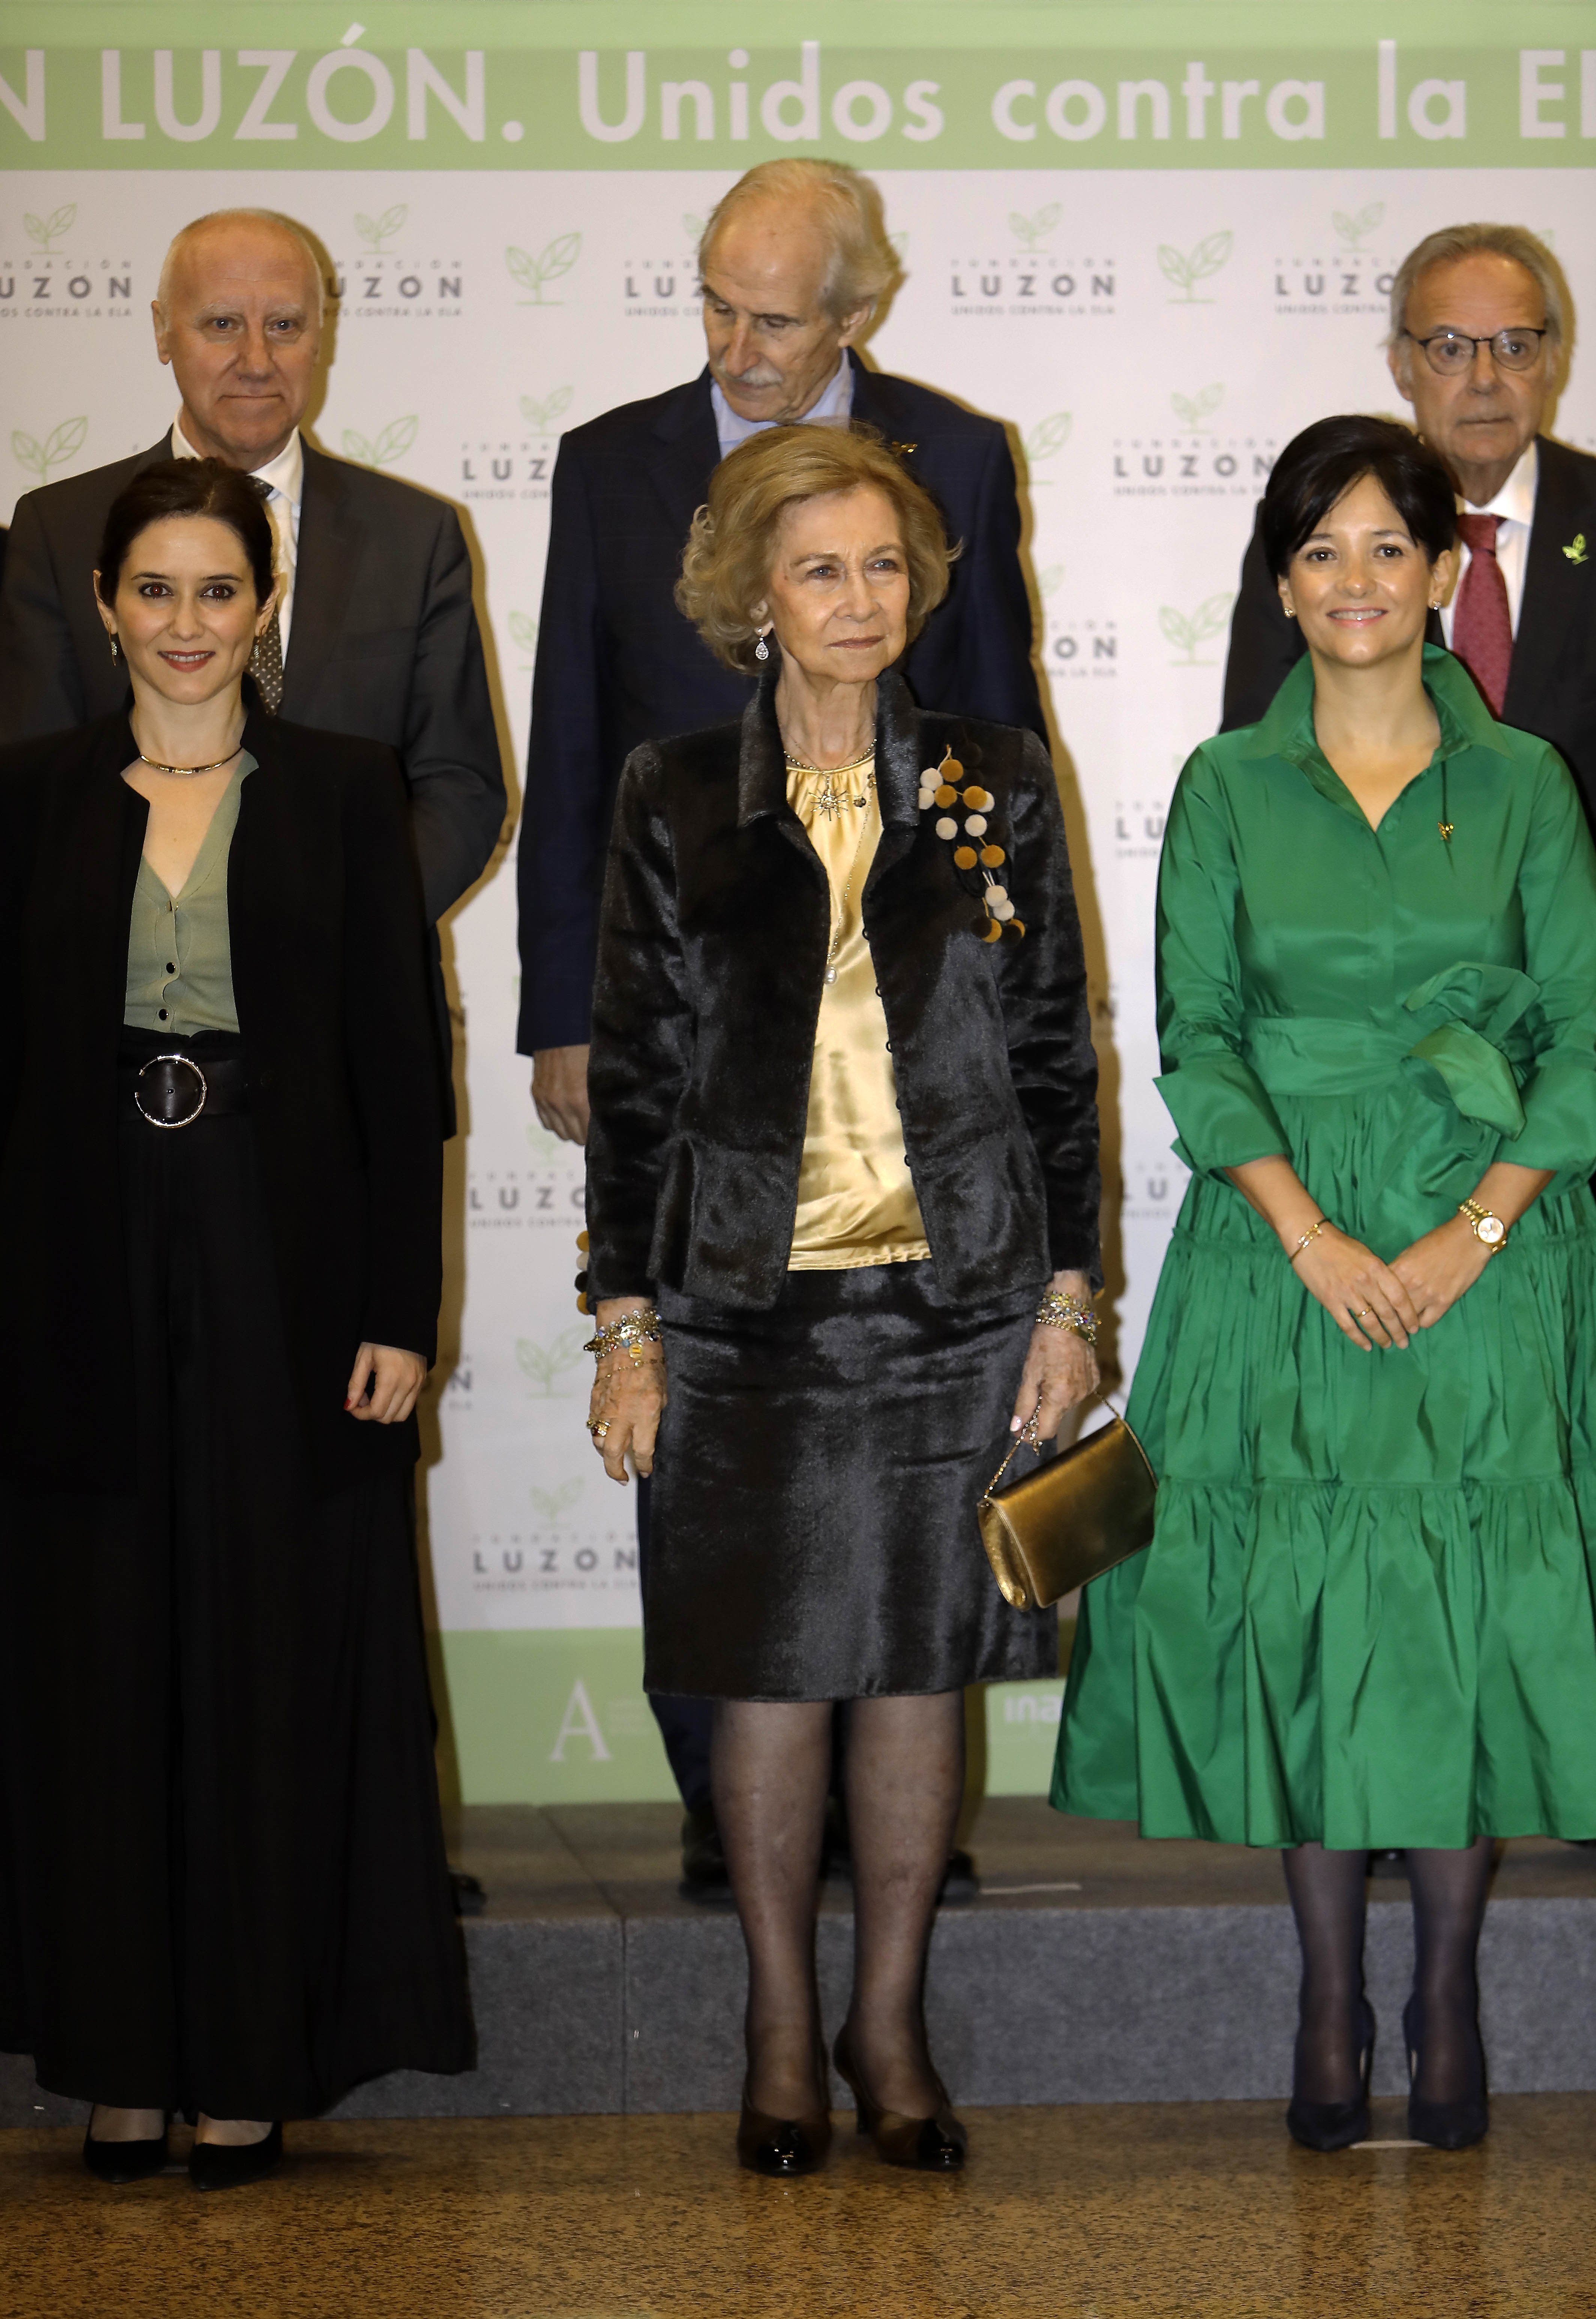 Isabel Díaz Ayuso, Reina Sofía de España y María José Arregui en concierto de la Fundación Francisco Luzón en madrid en febrero de 2020. | Foto: Getty Images